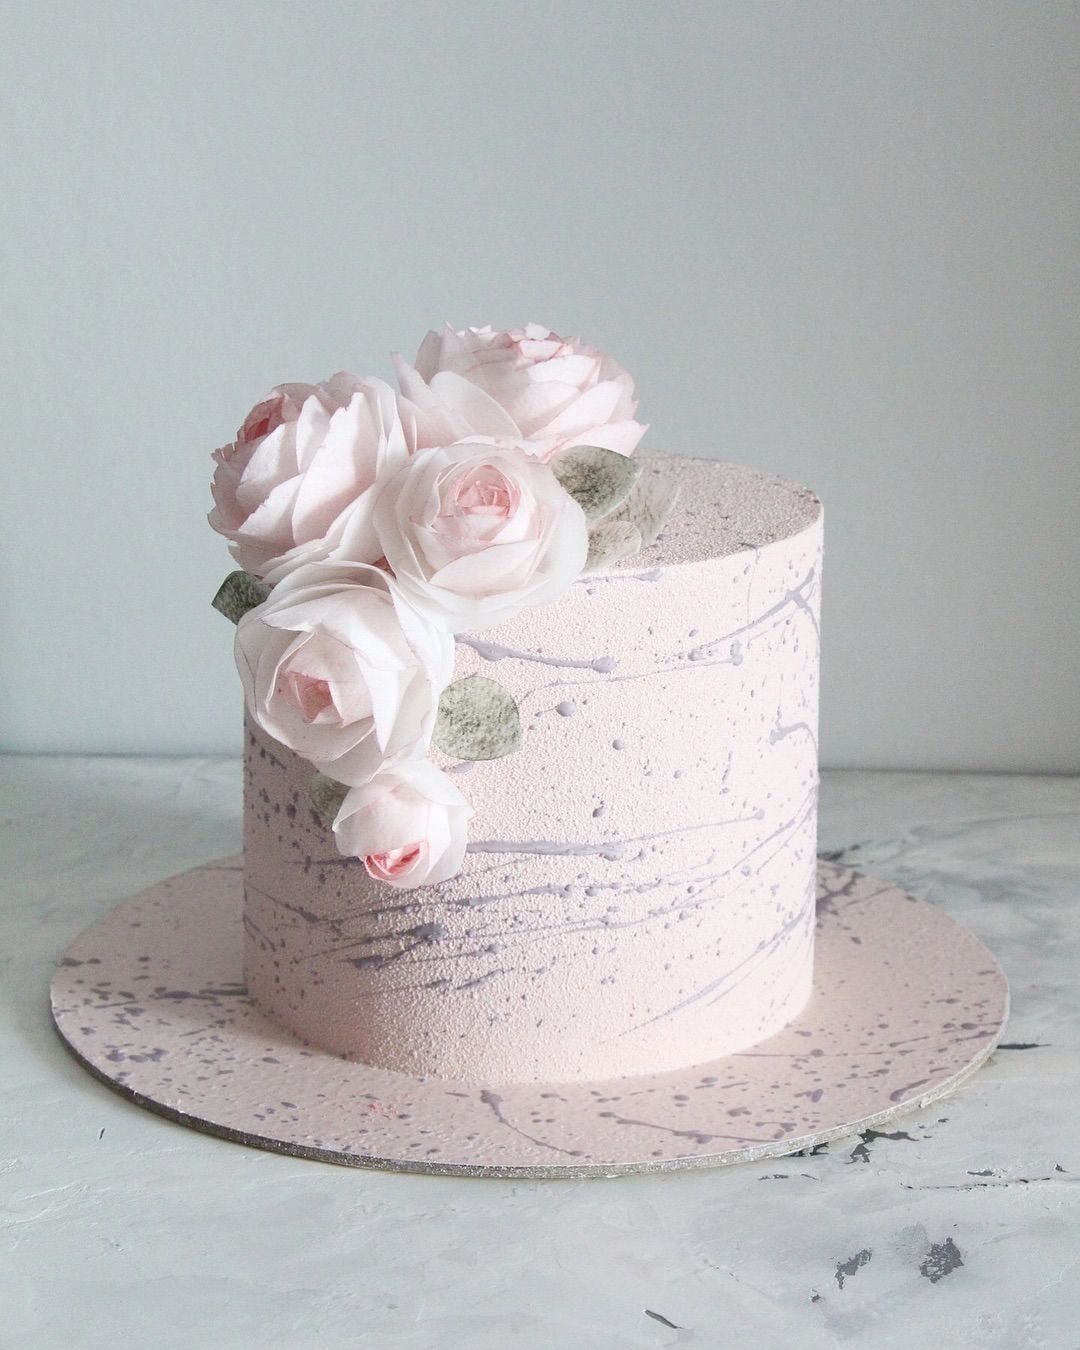 Цветы из вафельной бумаги на торт